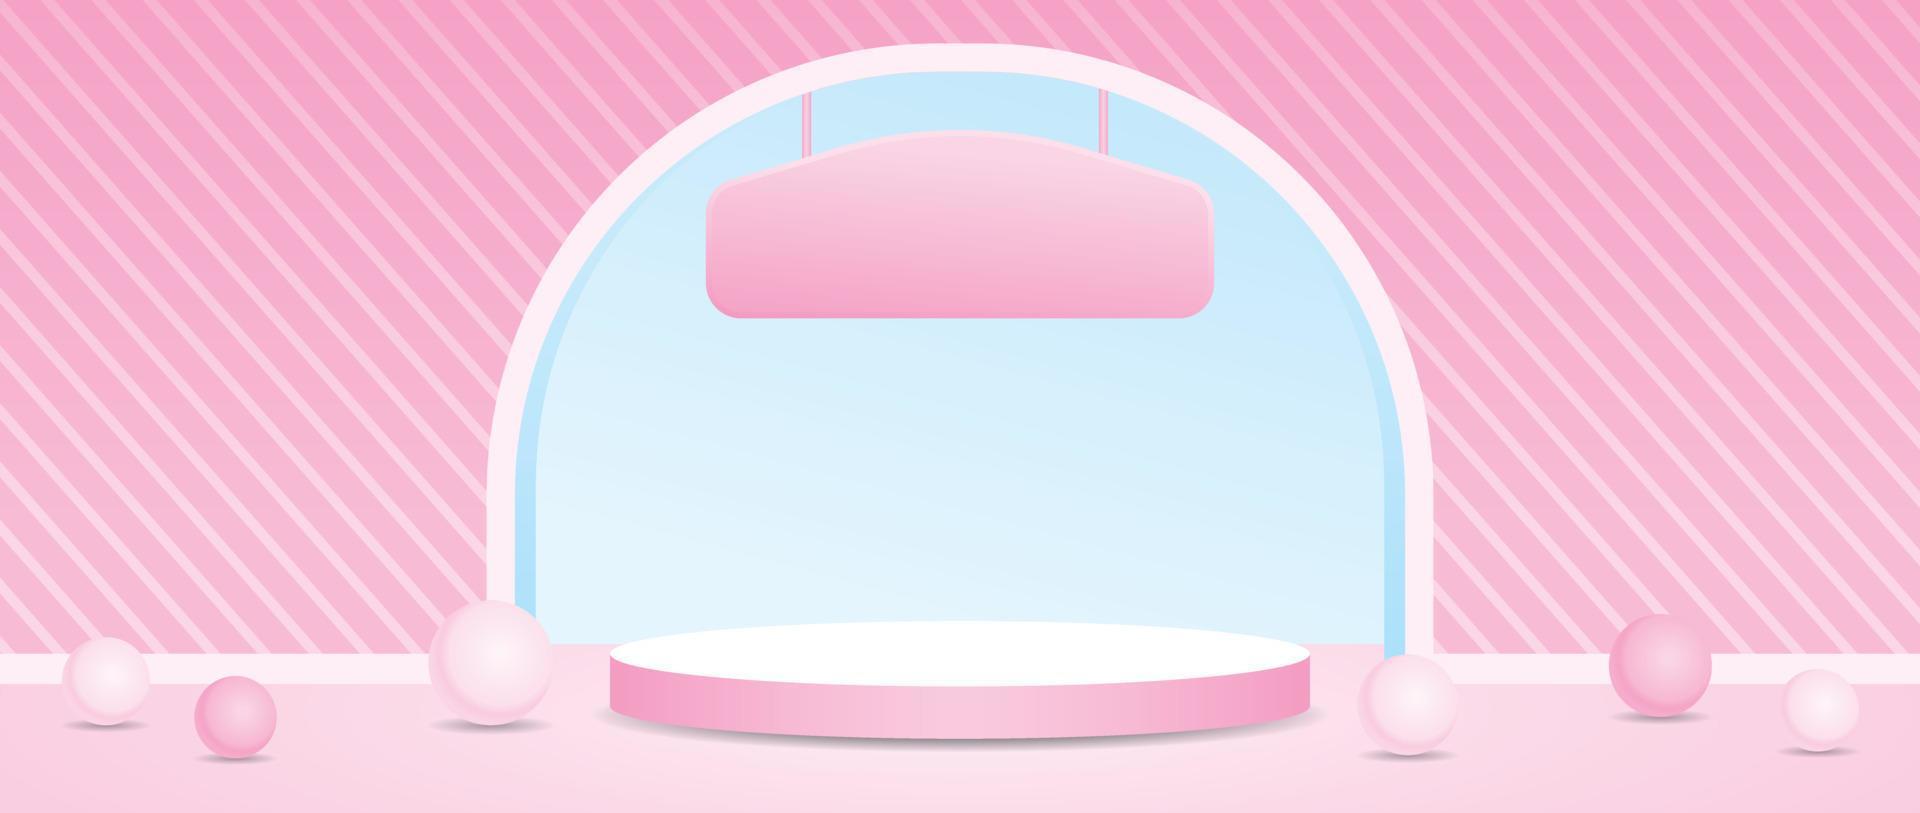 pódio de exibição de produto rosa pastel feminino bonito com vetor de ilustração 3d de parede de arco listrado para colocar seu objeto